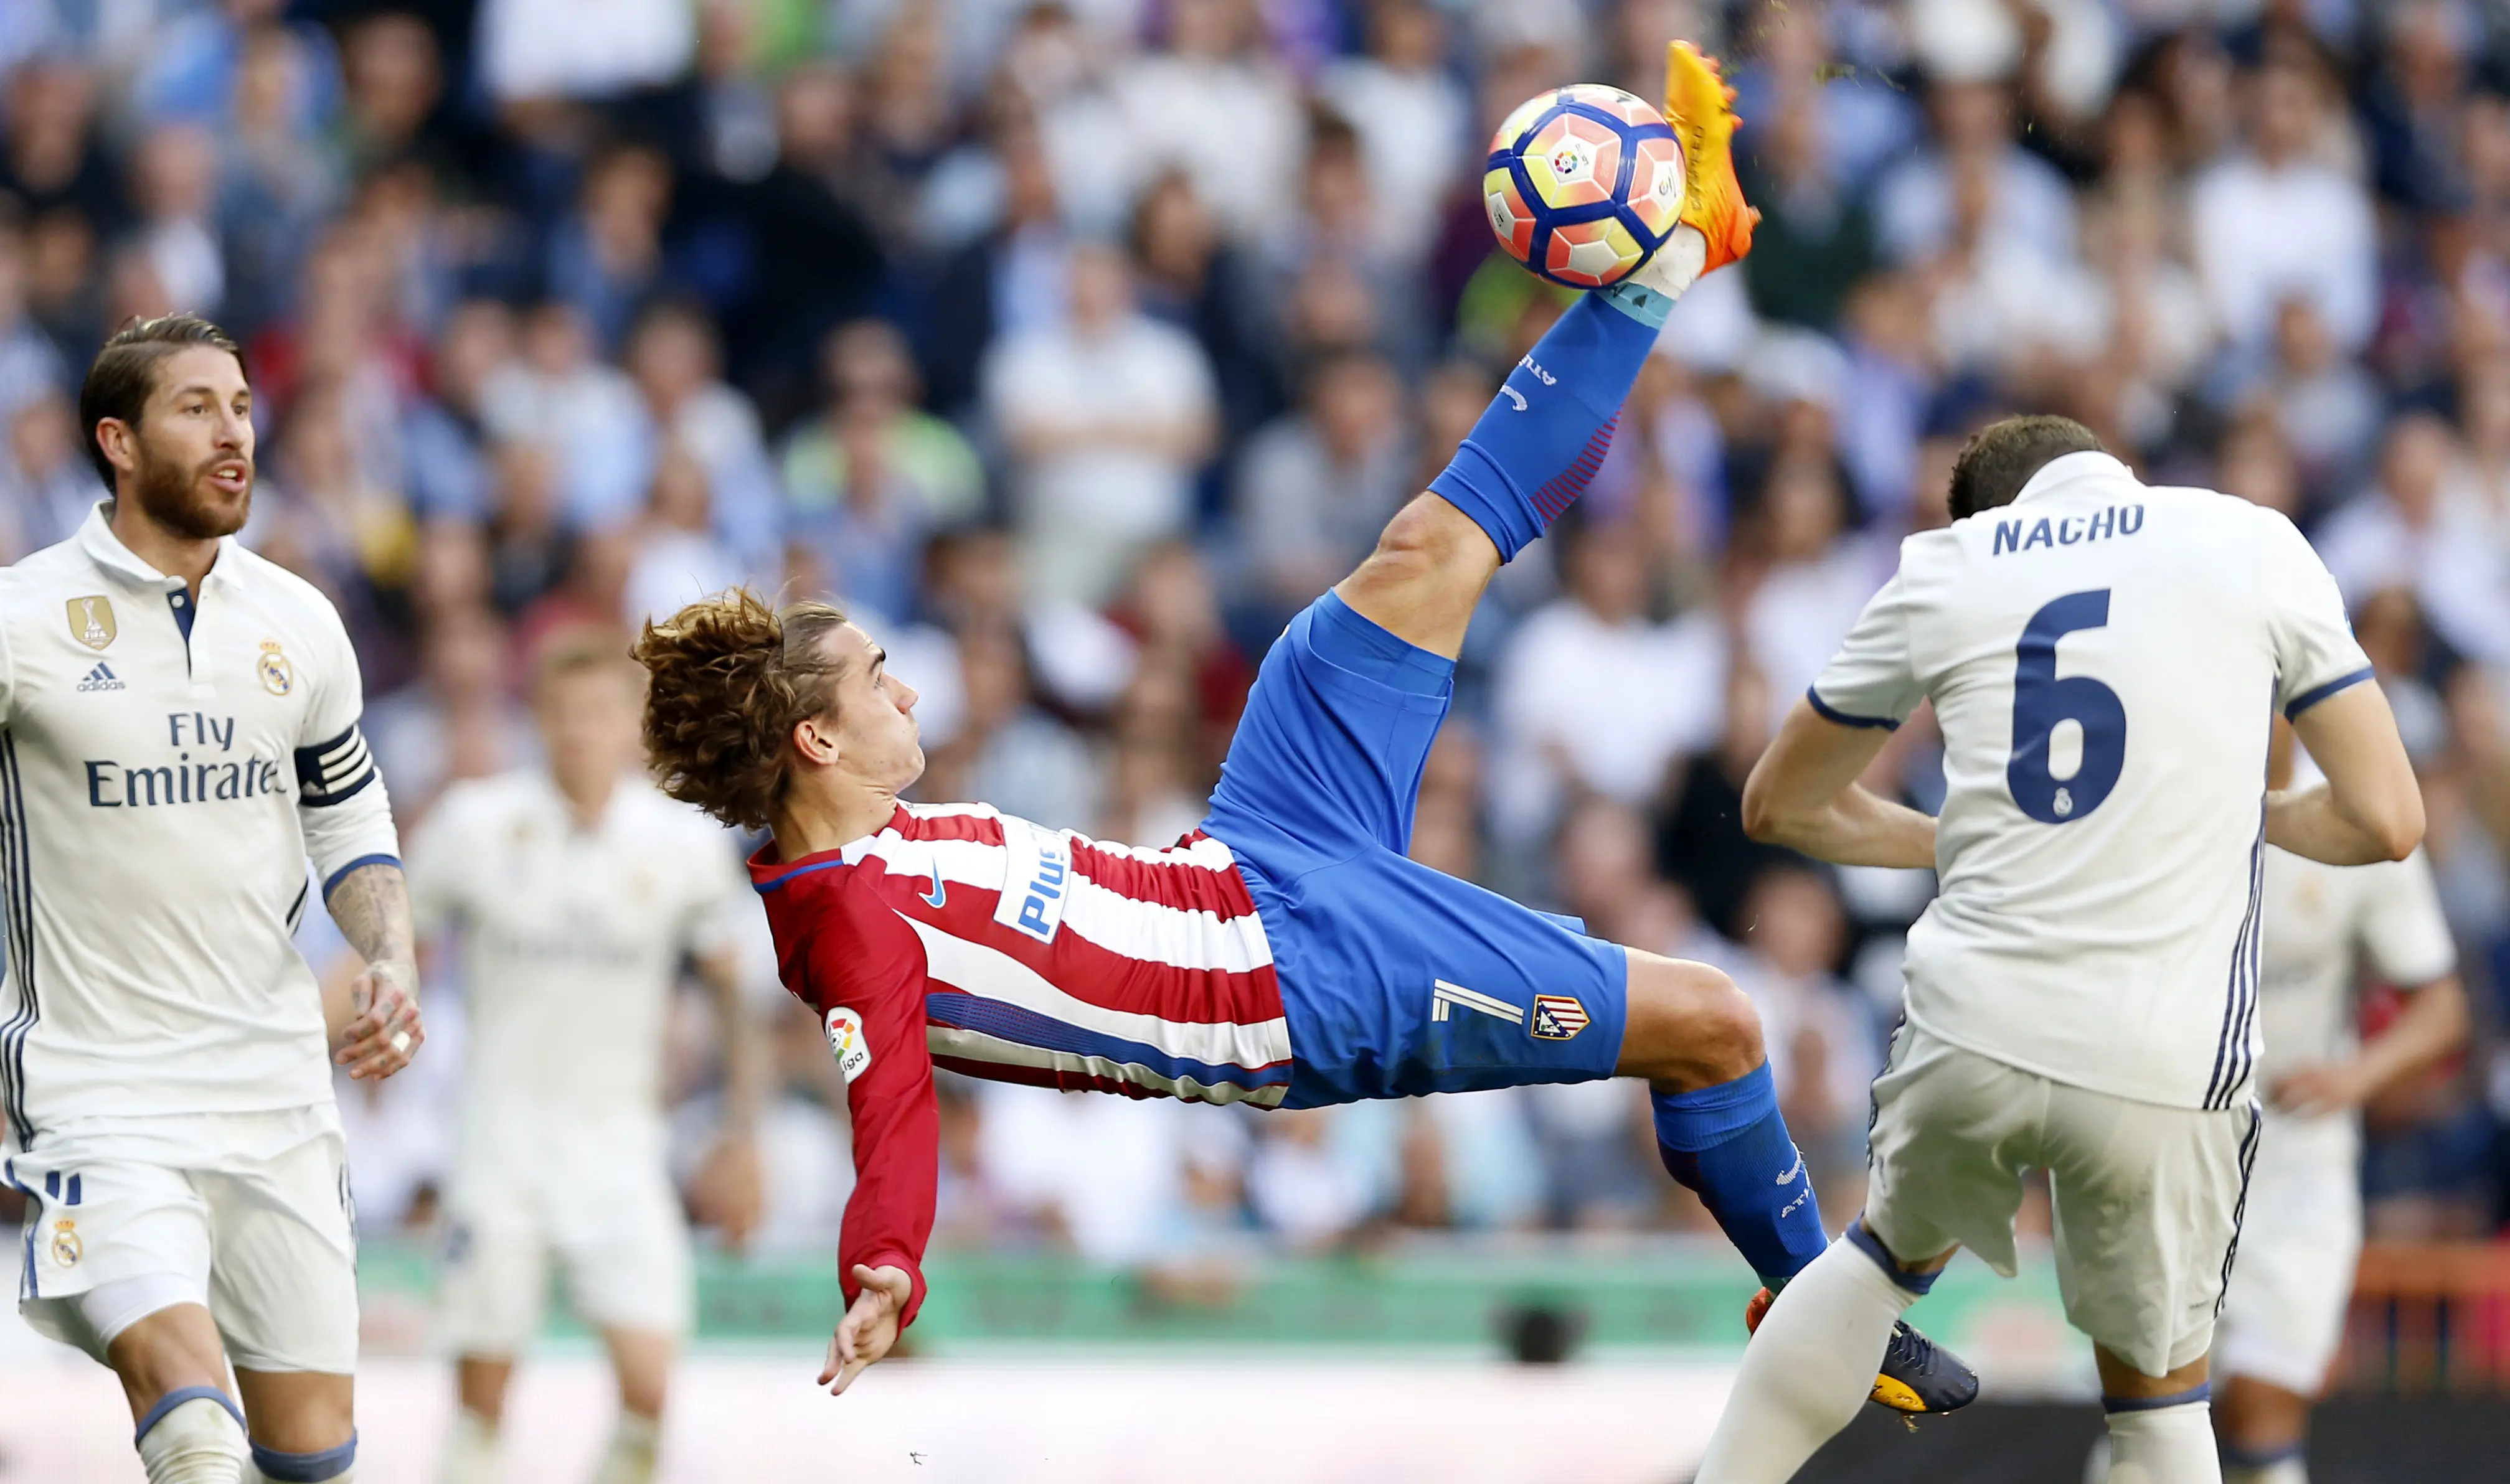 Pemain Atletico Madrid, Antoine Griezmann (tengah) melakukan tendangan salto ke gawang Real Madrid pada laga La Liga di Santiago Bernabeu stadium, Madrid, (8/4/2017). Real Madrid bermain Imbang 1-1 dengan Atletico.(AP/Daniel Ochoa de Olza)